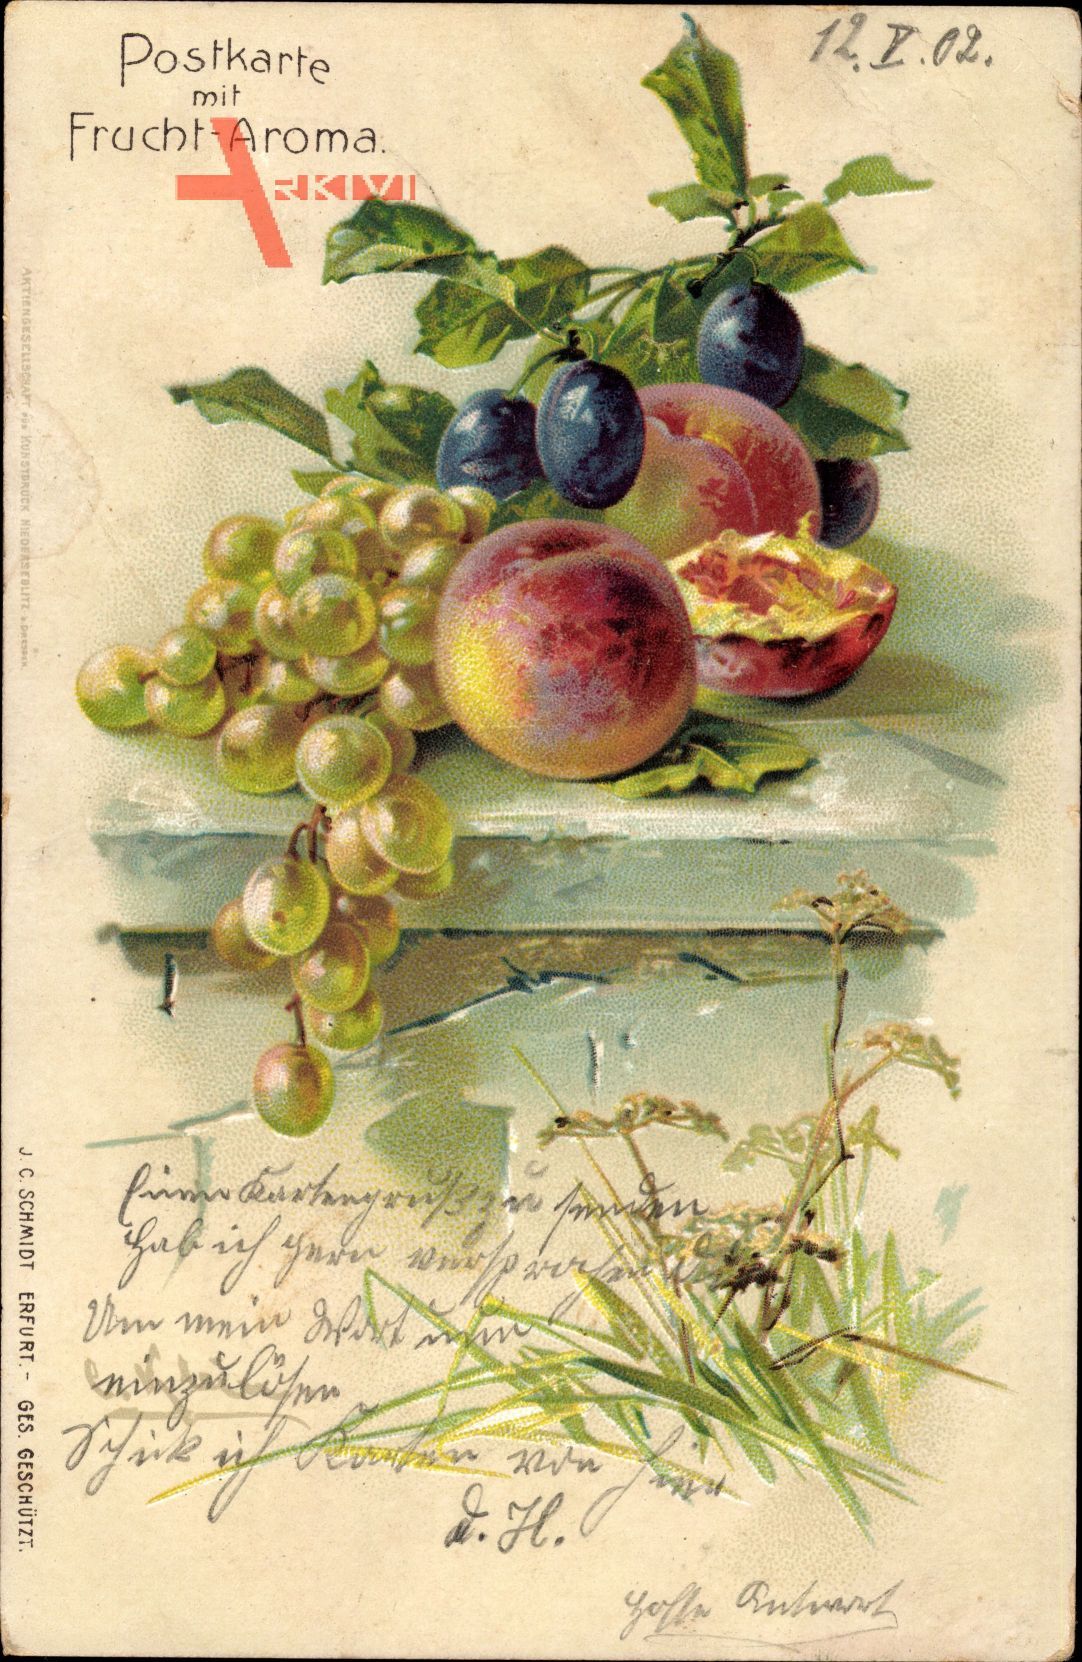 Postkarte mit Fruchtaroma, Obst, Weintrauben, Apfelsinen